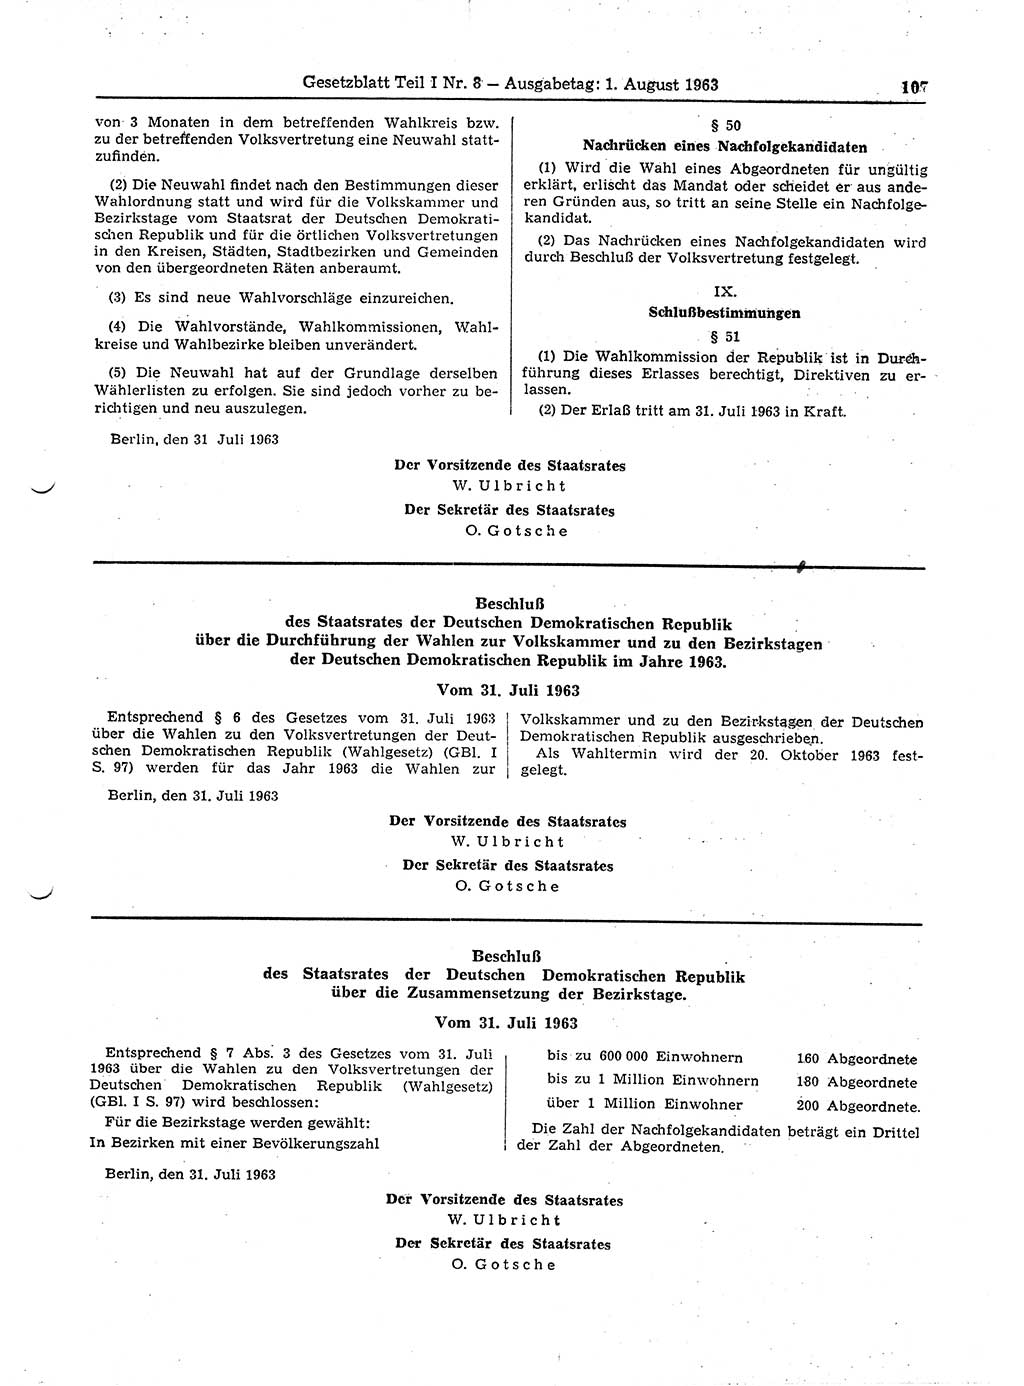 Gesetzblatt (GBl.) der Deutschen Demokratischen Republik (DDR) Teil Ⅰ 1963, Seite 107 (GBl. DDR Ⅰ 1963, S. 107)